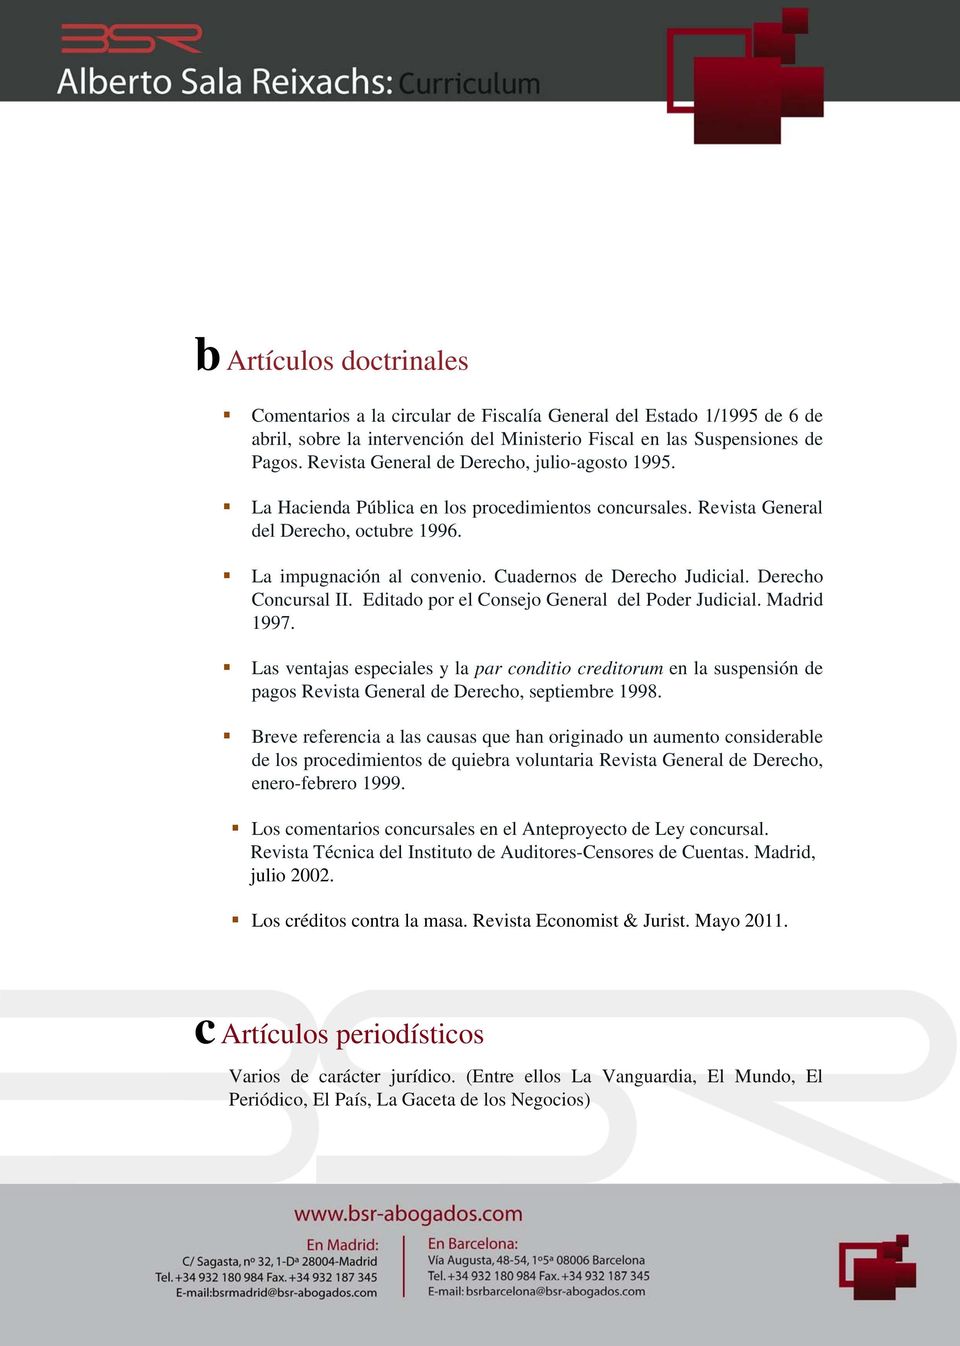 Cuadernos de Derecho Judicial. Derecho Concursal II. Editado por el Consejo General del Poder Judicial. Madrid 1997.